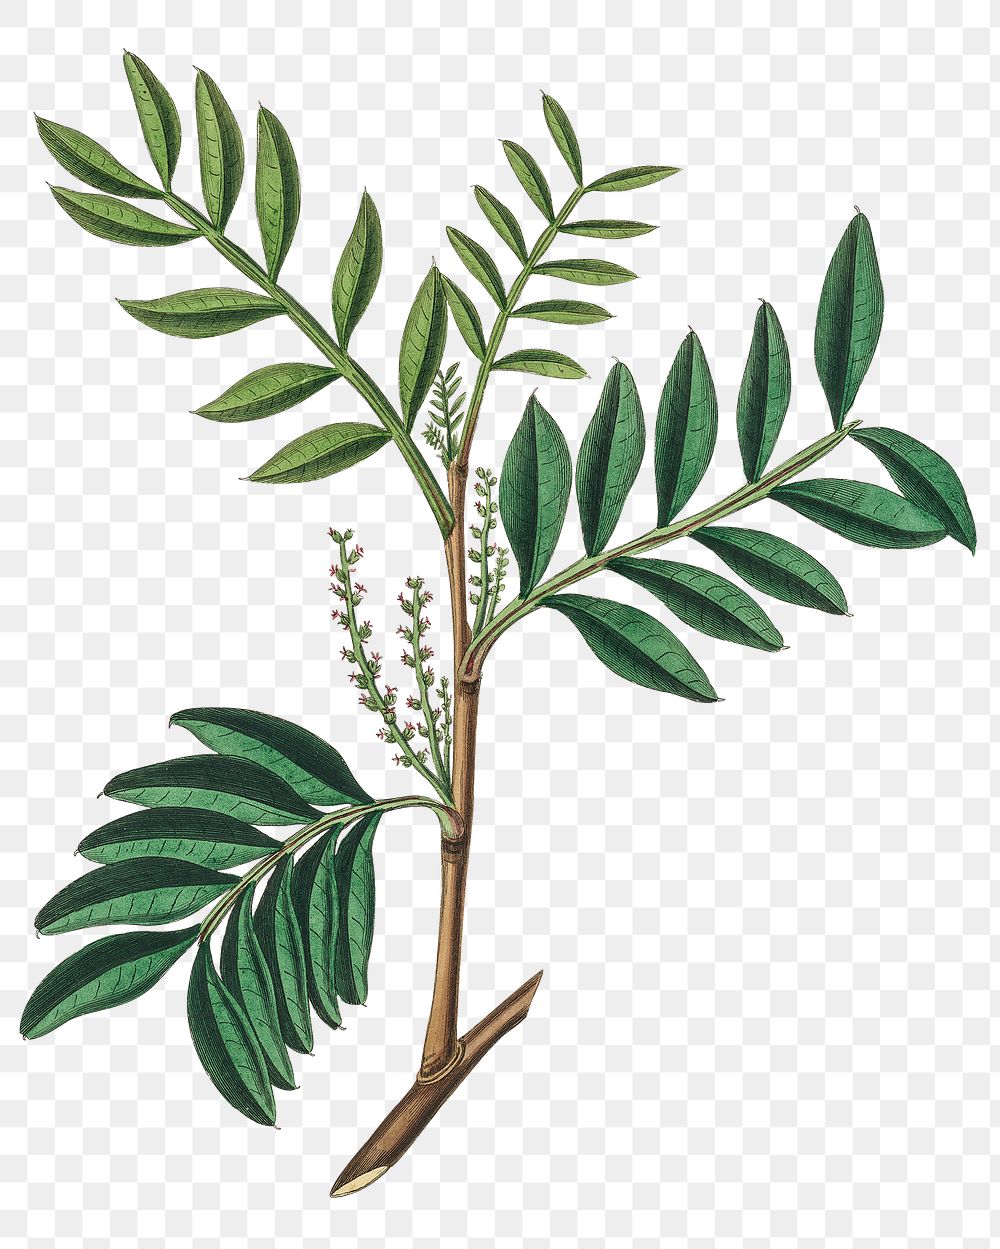 Png green Lentisk leaves with branch plant vintage sketch